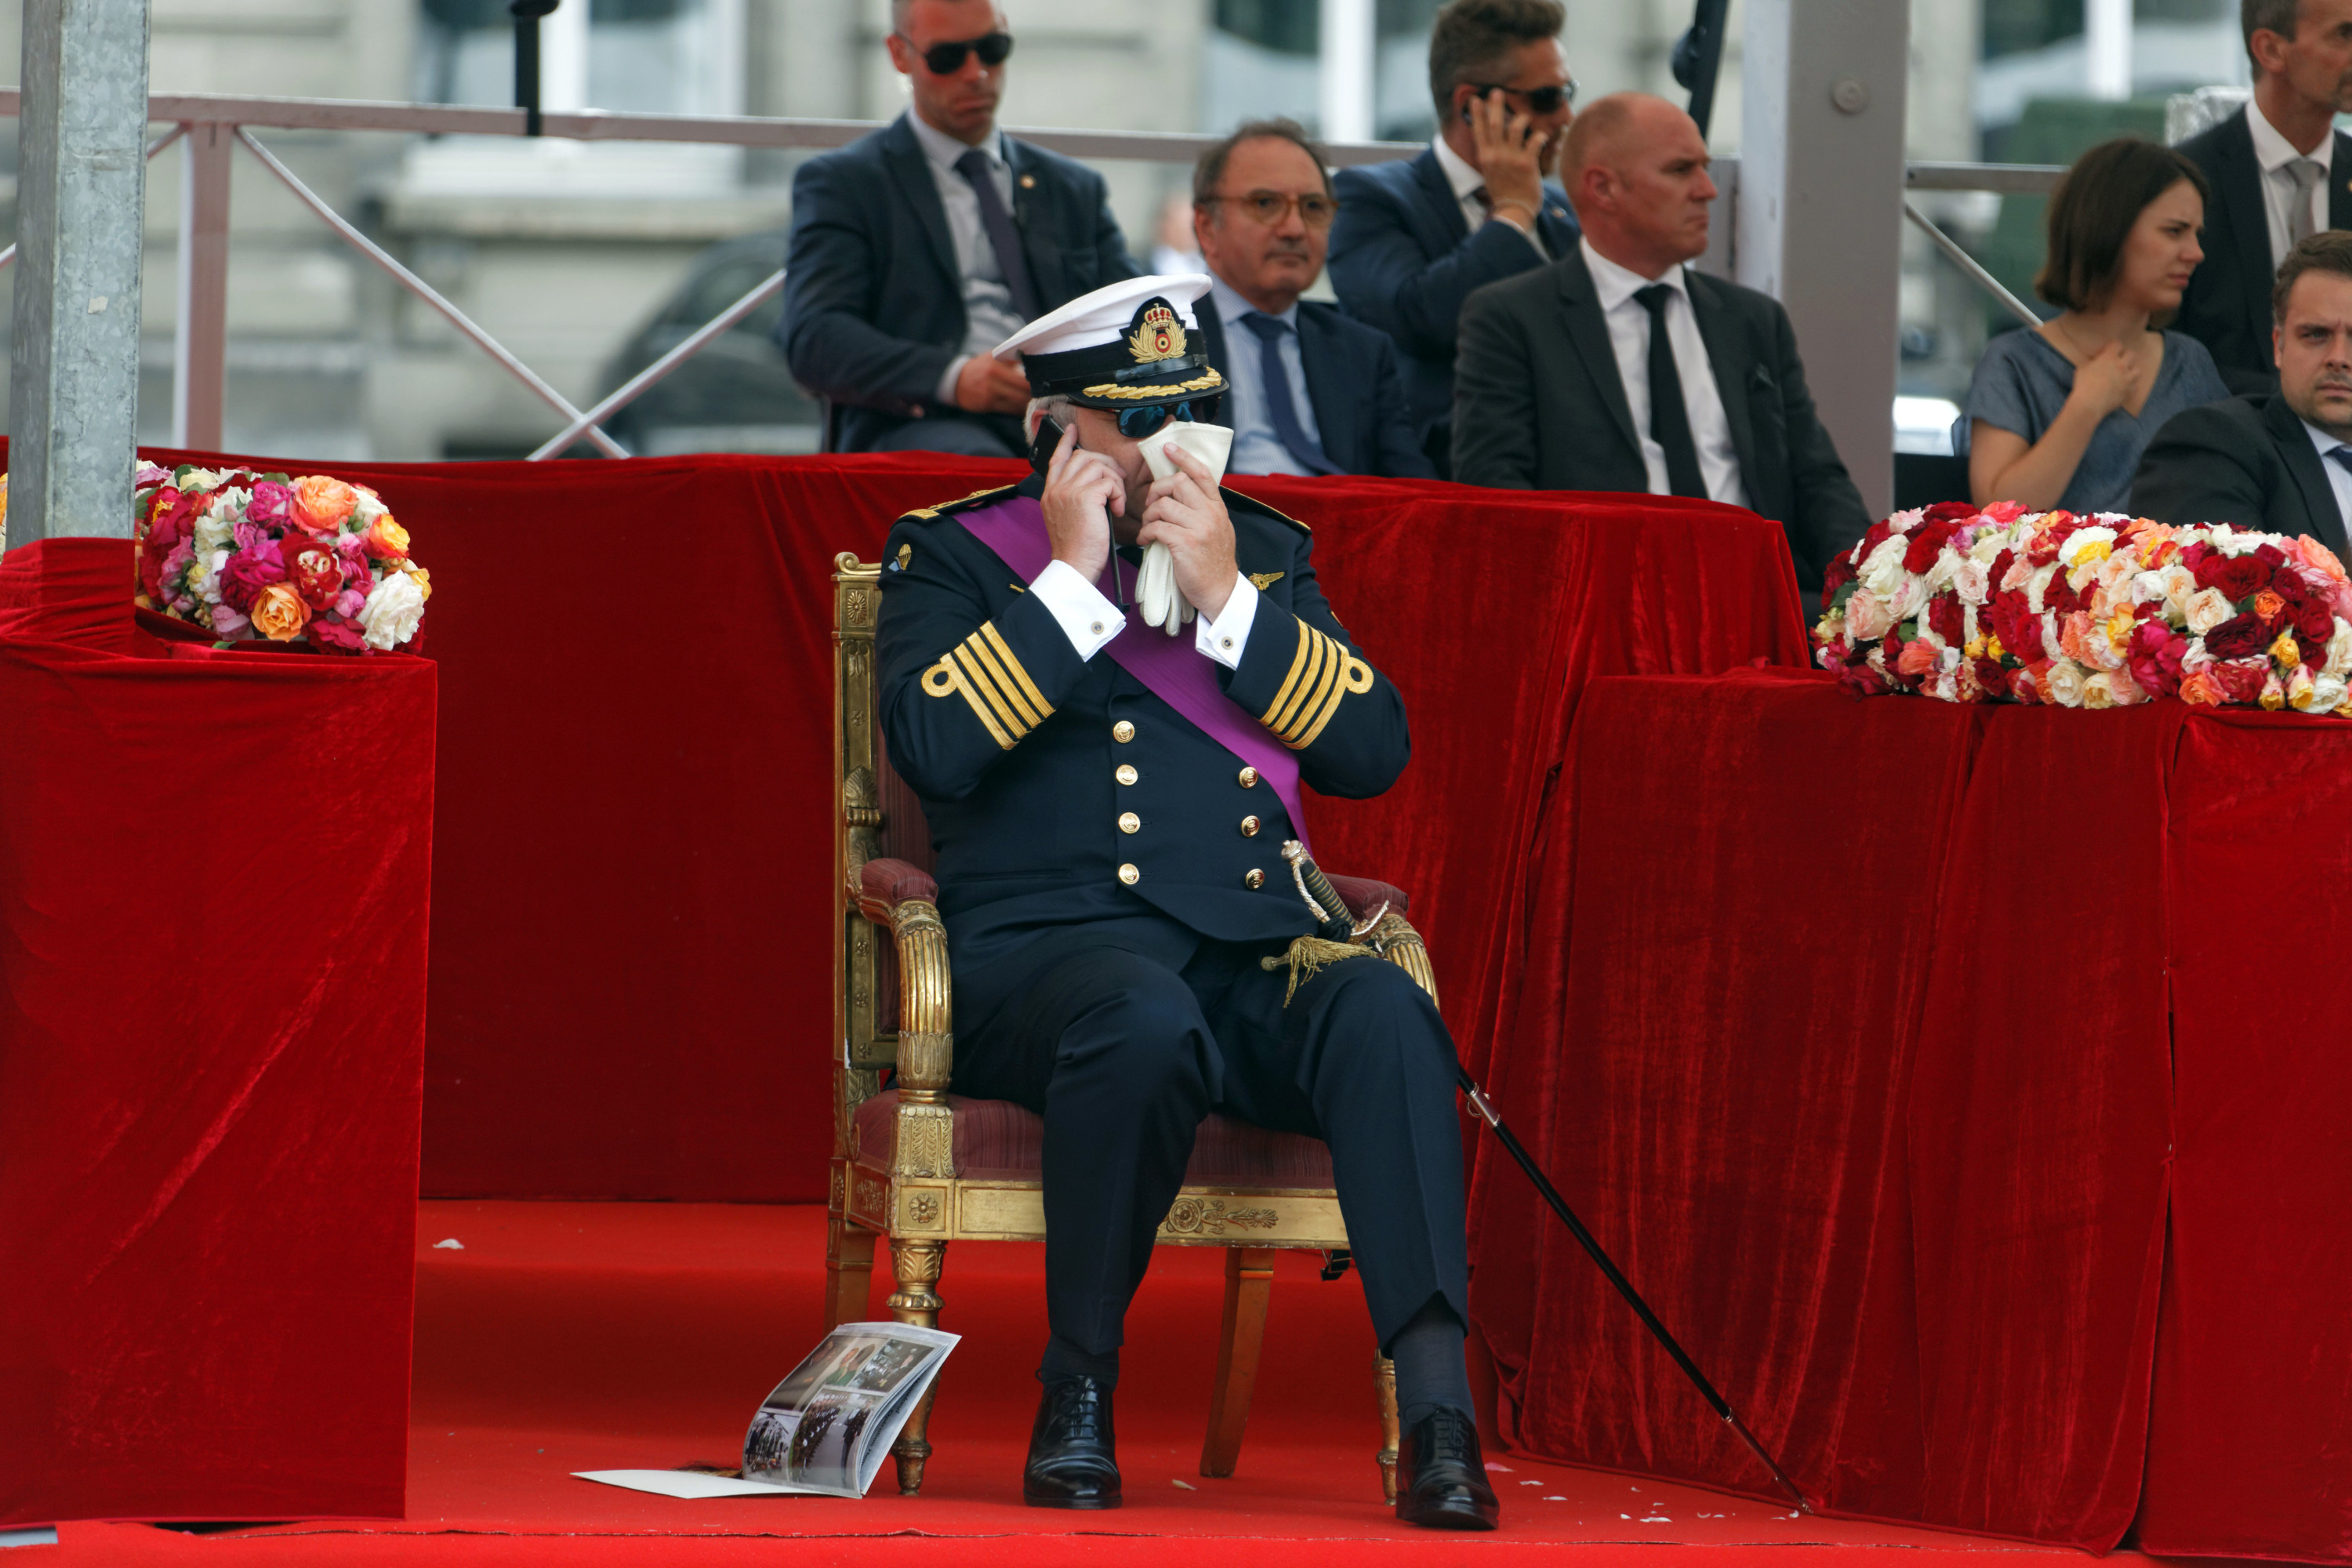 Prins Lorenz tijdens de militaire parade op de Nationale Feestdag van België, 21 juli 2016. – © Sylvain Lefevre / Getty Images